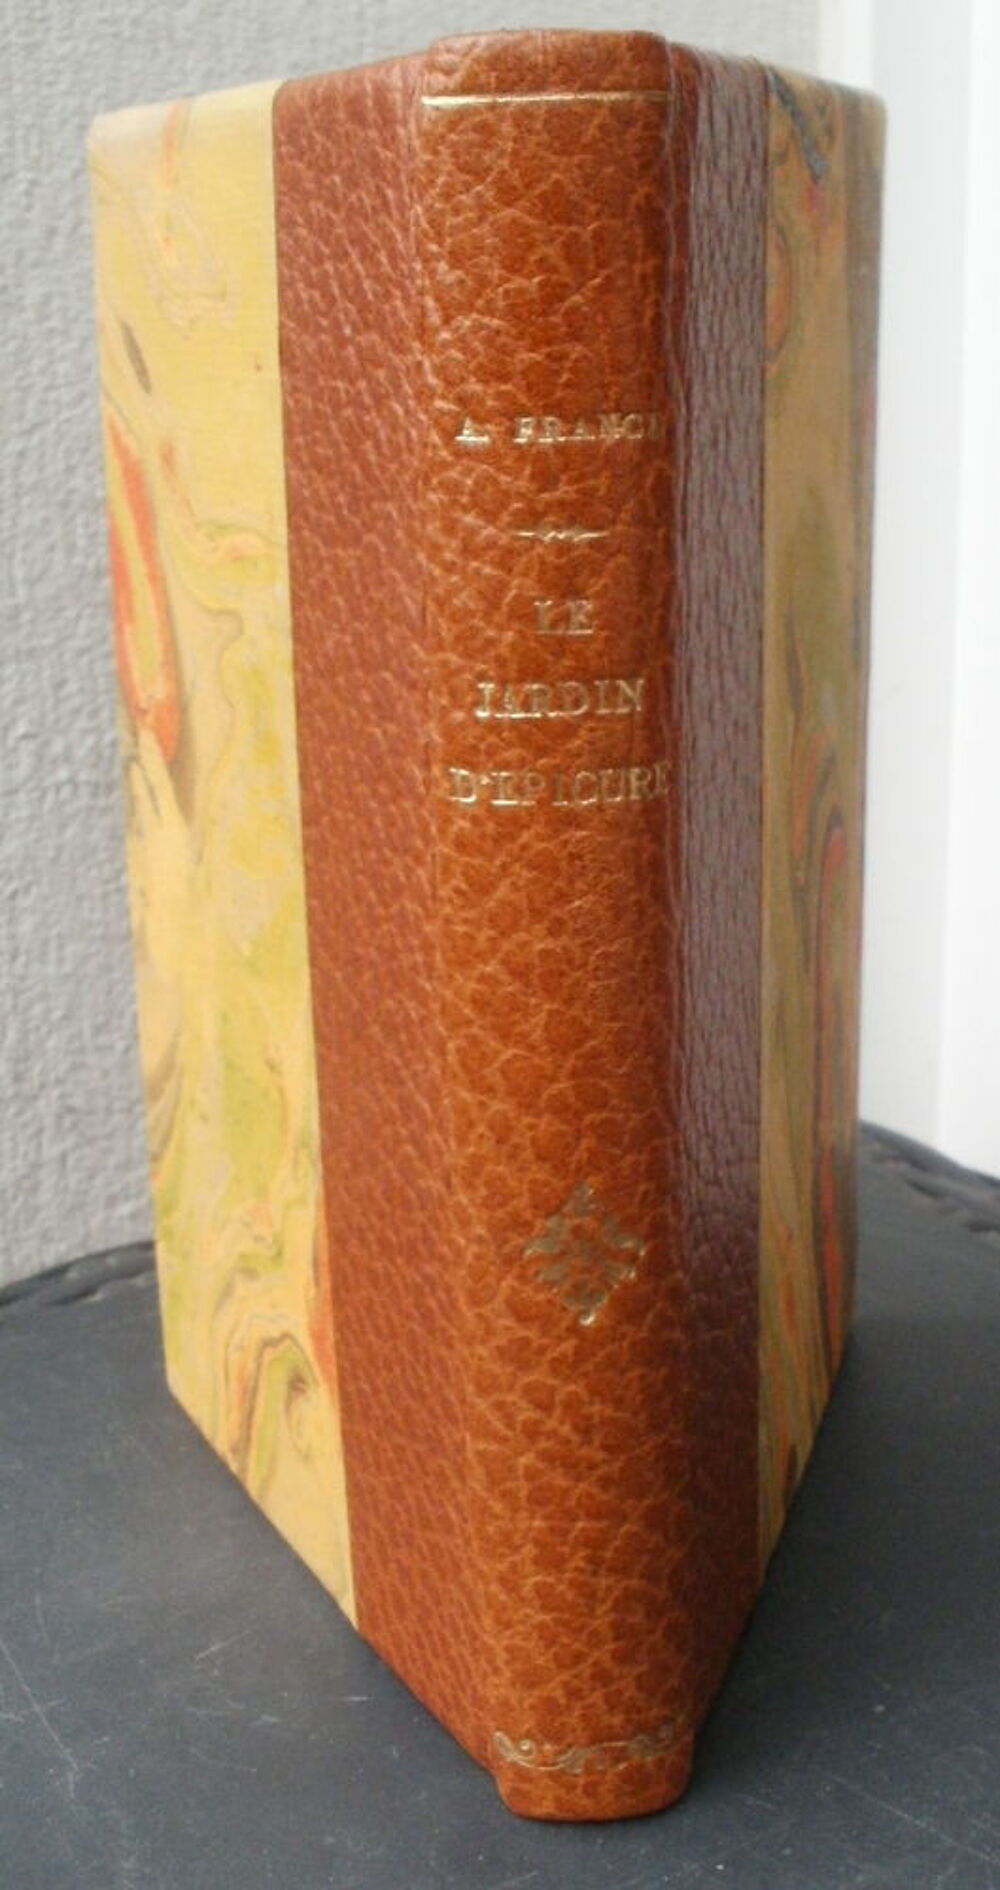 Anatole FRANCE le jardin d'Epicure - CALMANN LEVY - 1949 Livres et BD